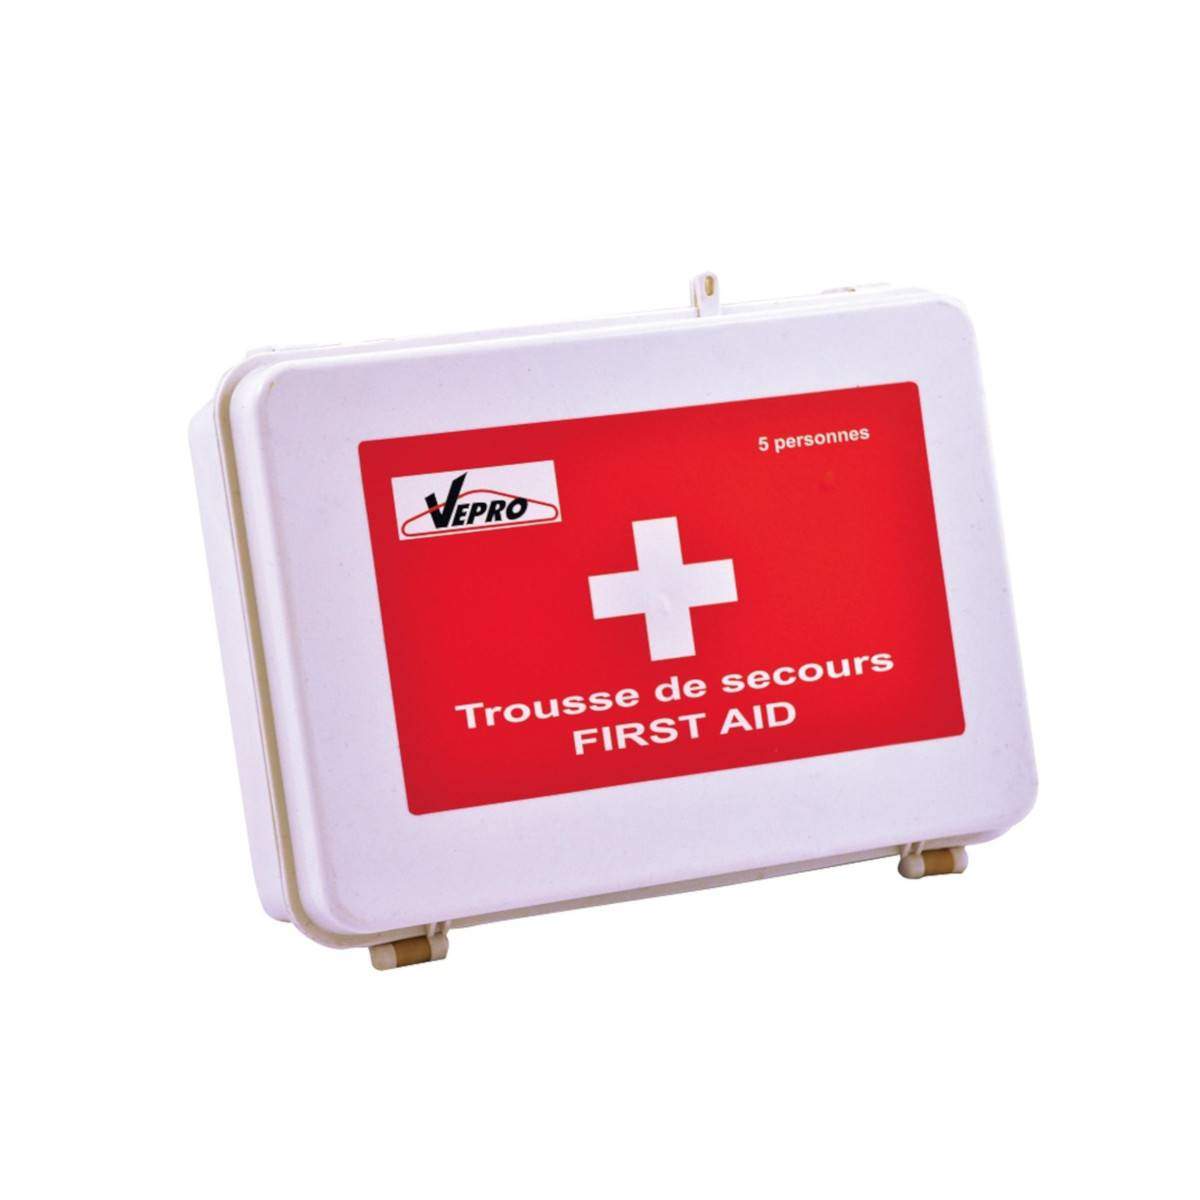 Erste-Hilfe-Kasten für 5 Personen